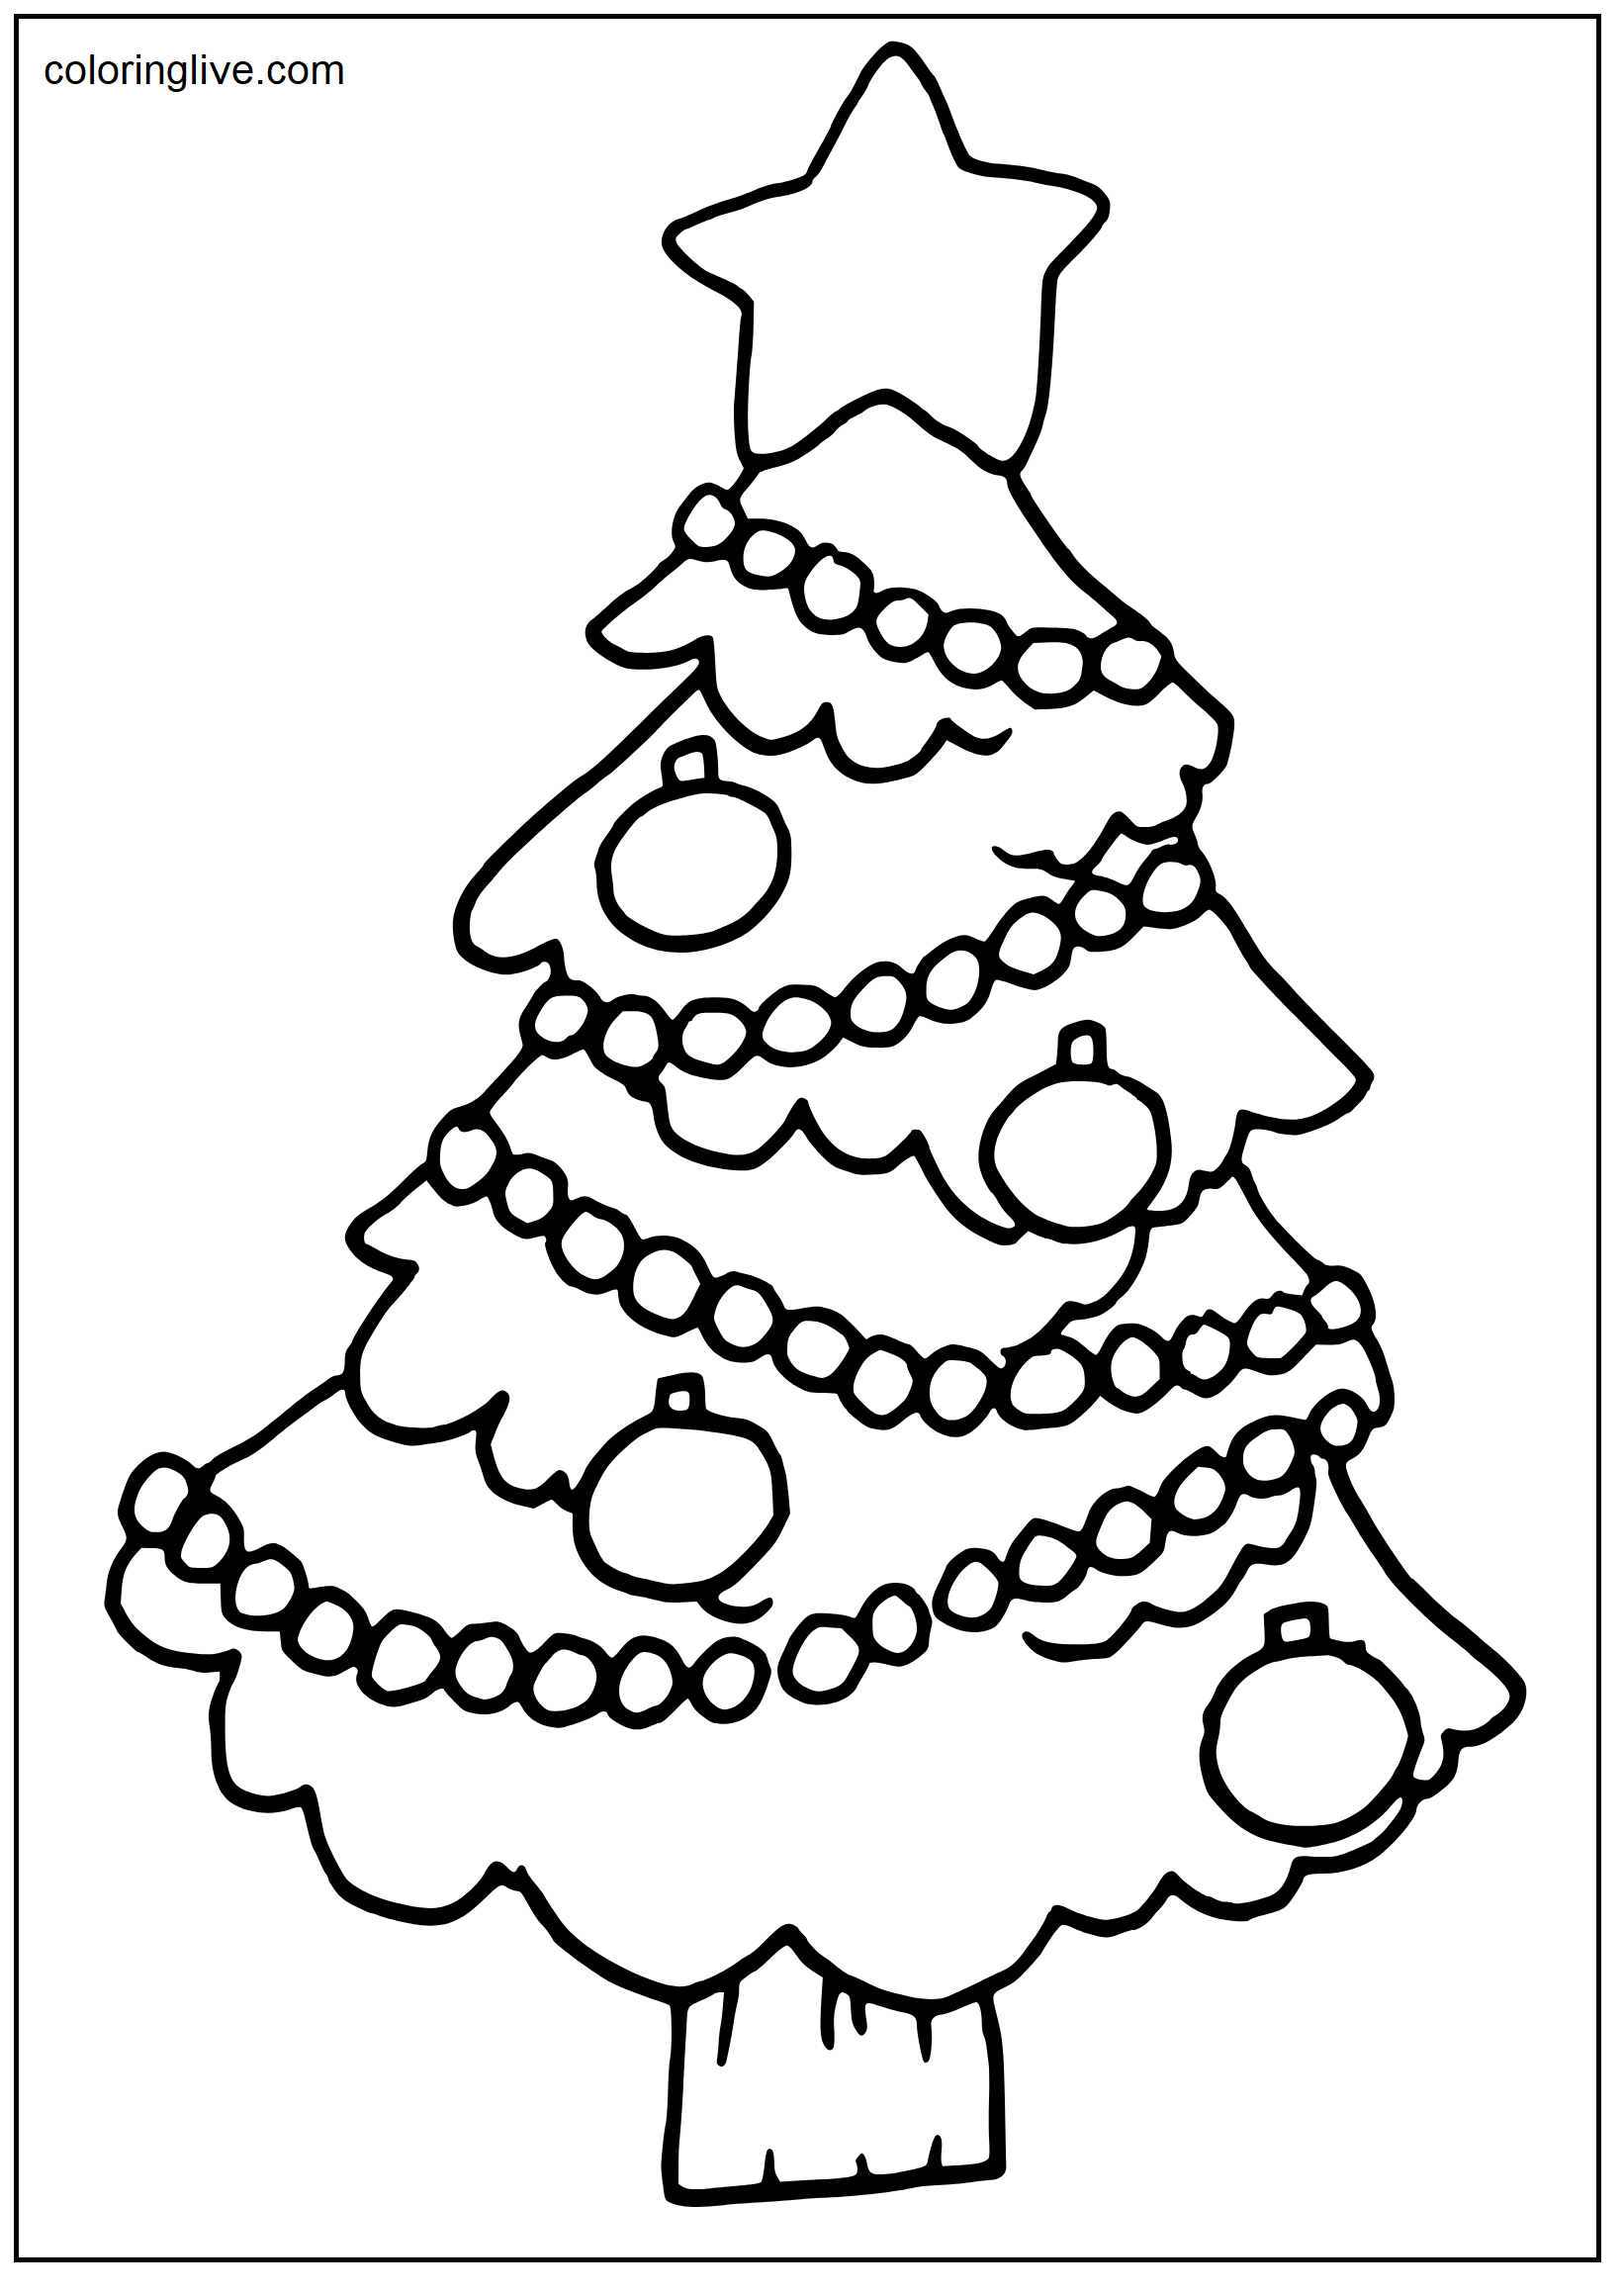 Printable Christmas Tree Coloring Page for kids.